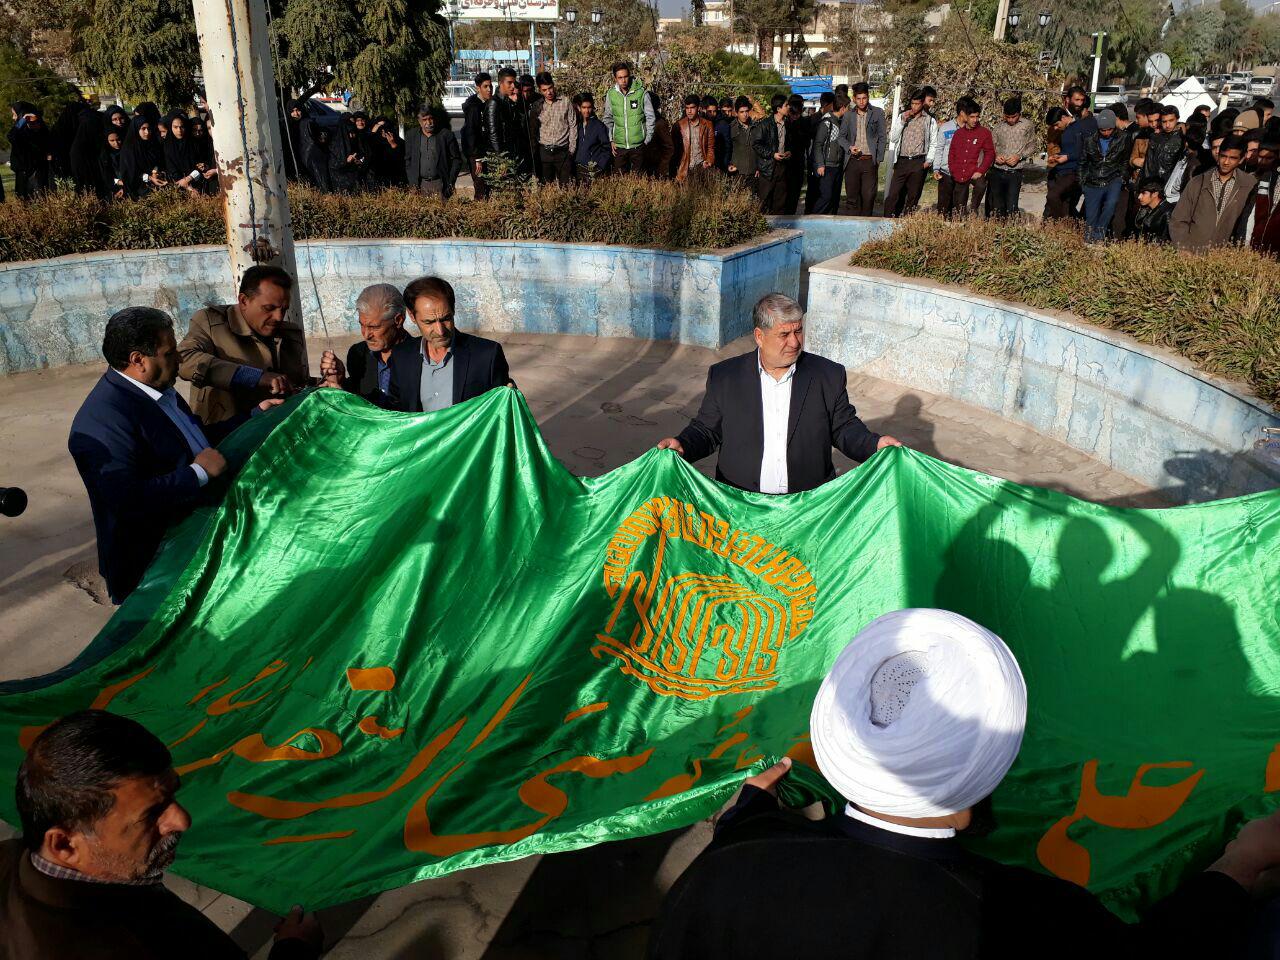 پرچم سبز متبرک حرم رضوی با پرچم مشکی در میدان قدس رفسنجان تعویض شد/عکس